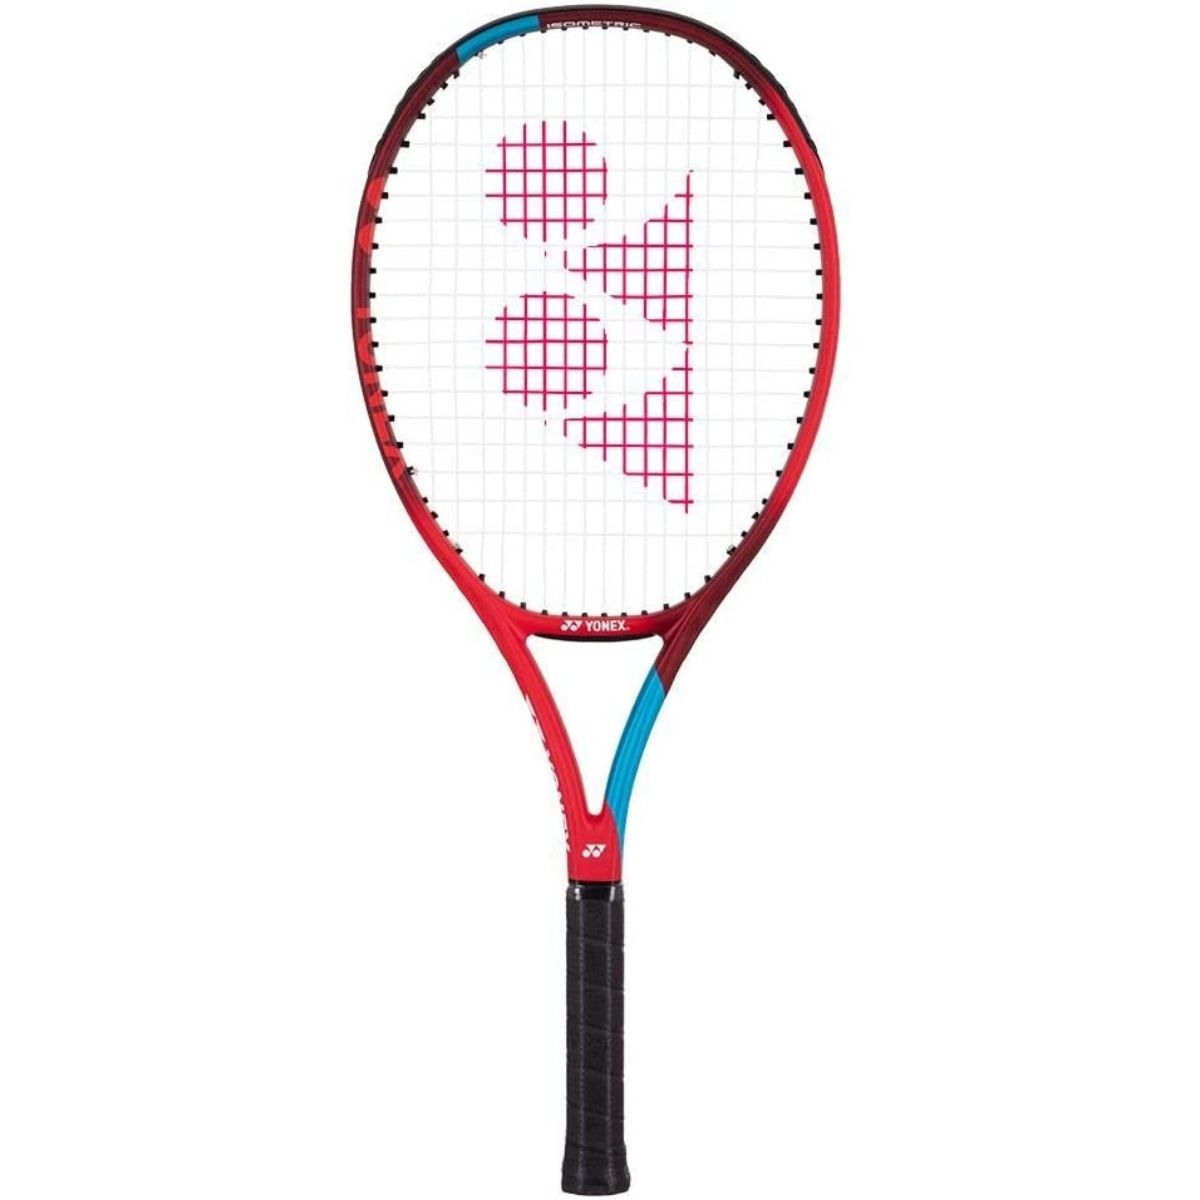 Browning Nano-gel Ultimate 26 Tennis Racket RRP £250 